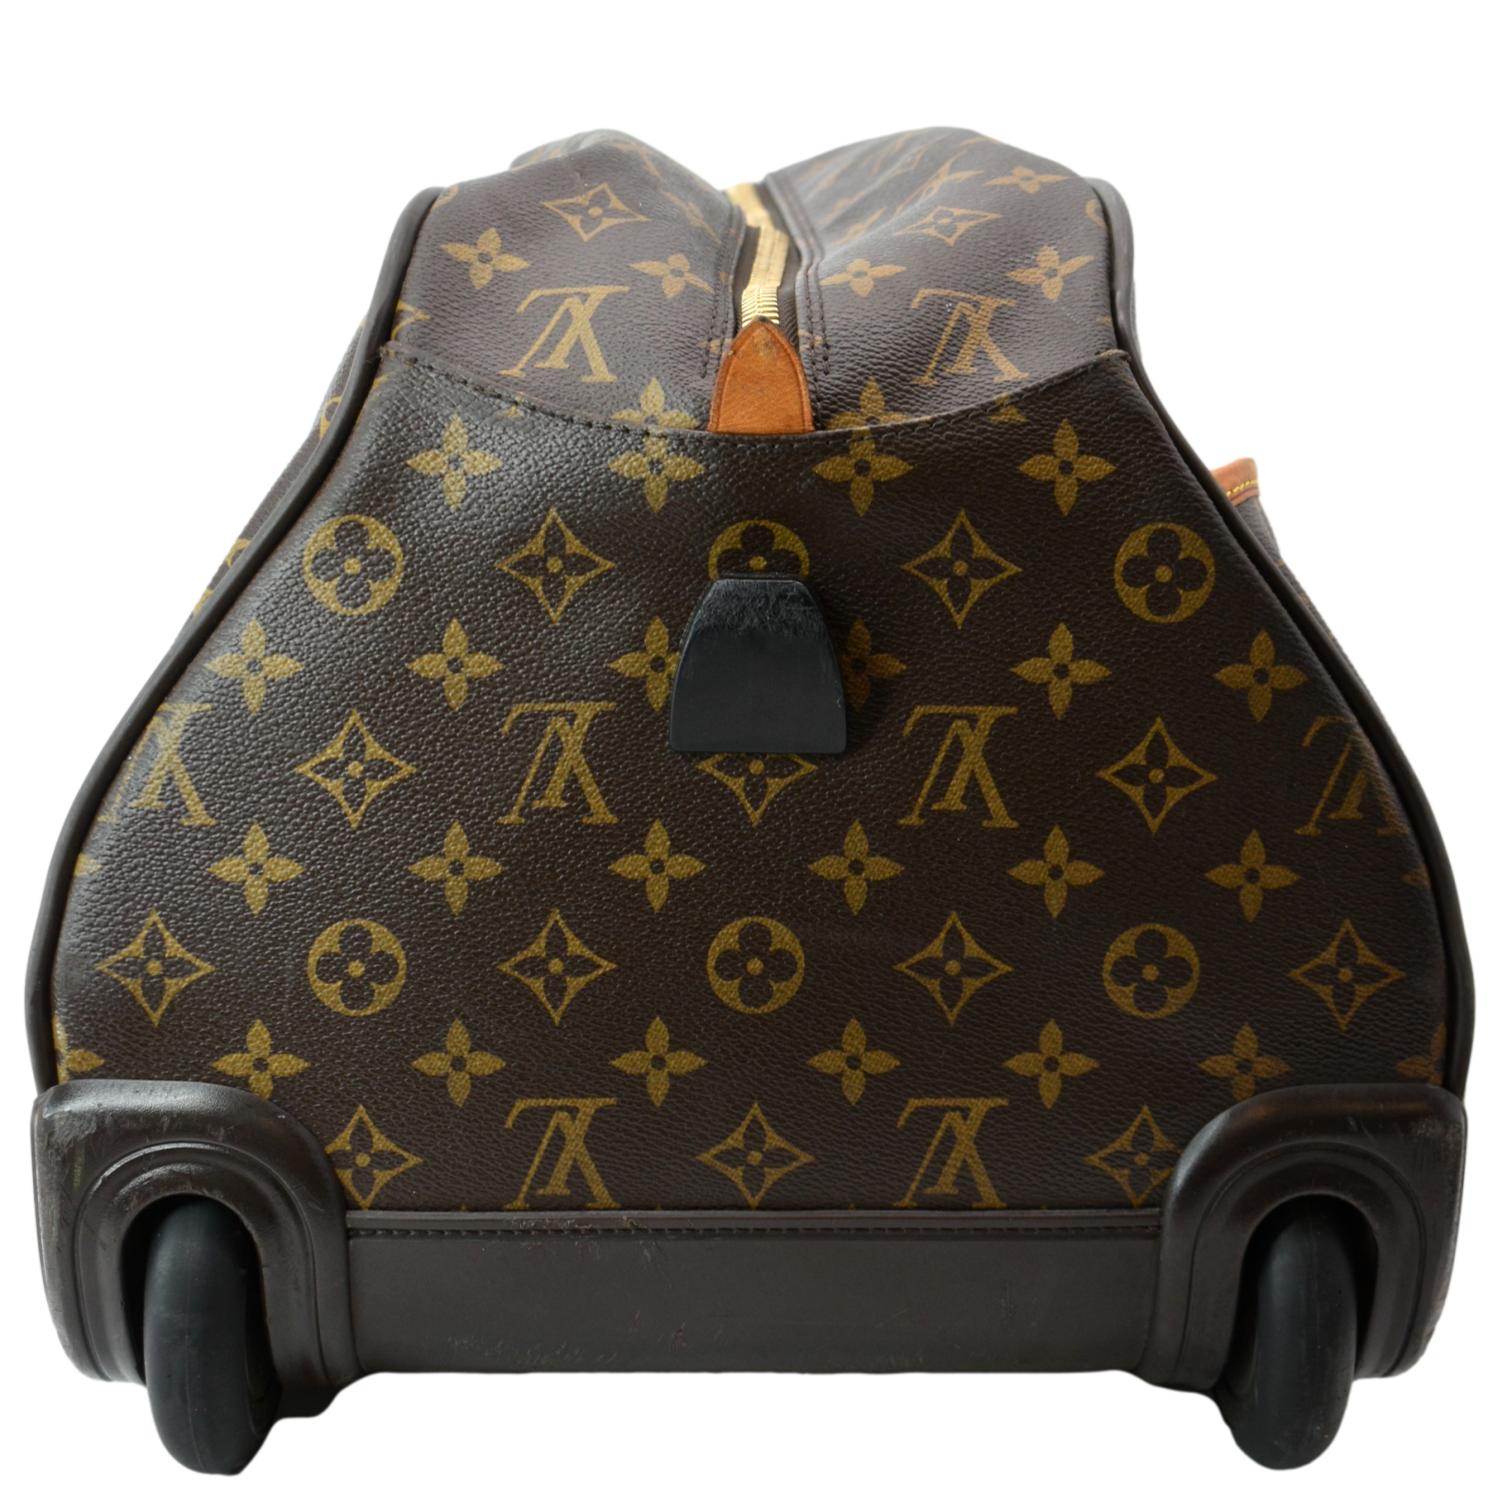 A Damier Eole 50 suitcase, Louis Vuitton. Features Damier leather